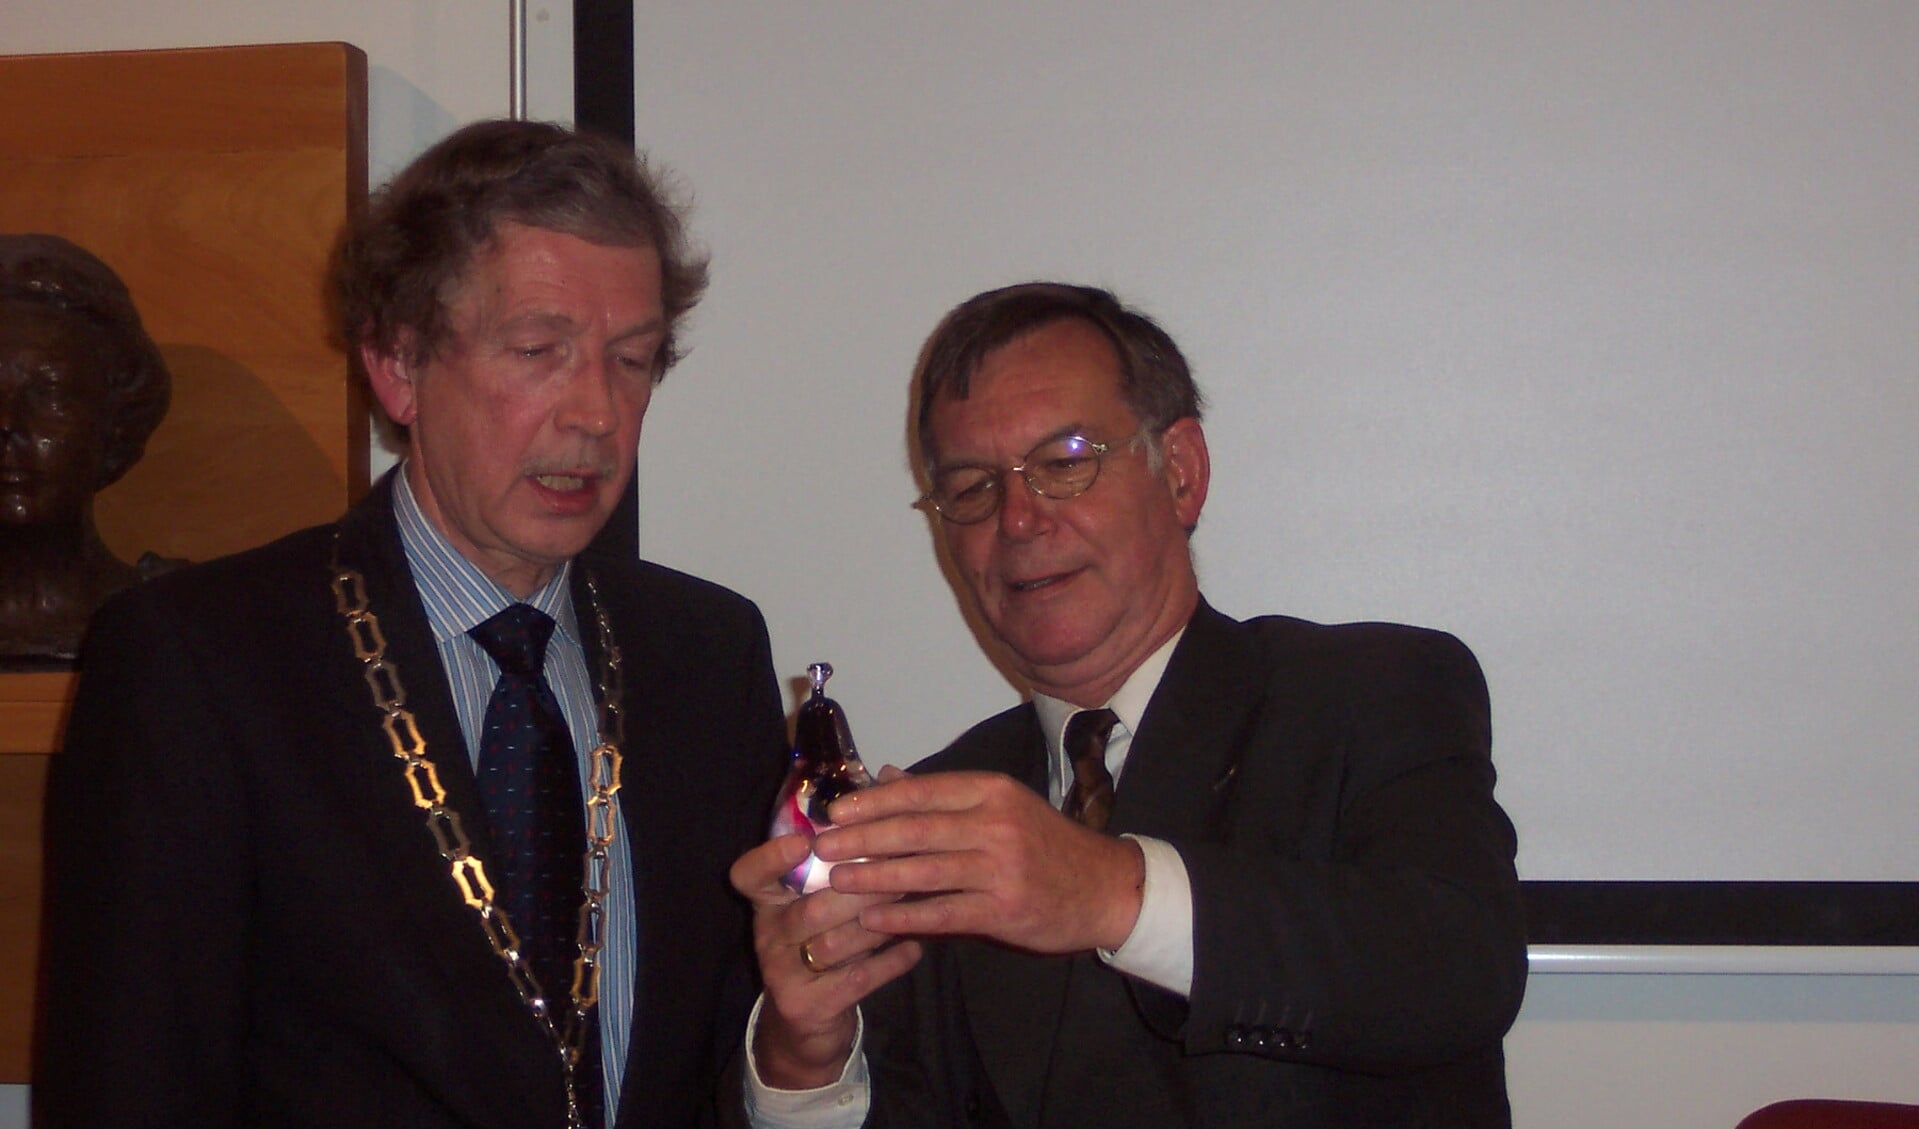 Burgemeester Alexander Tchernoff bood Okke Pol bij zijn afscheid een cadeau van Leerdams glas aan.